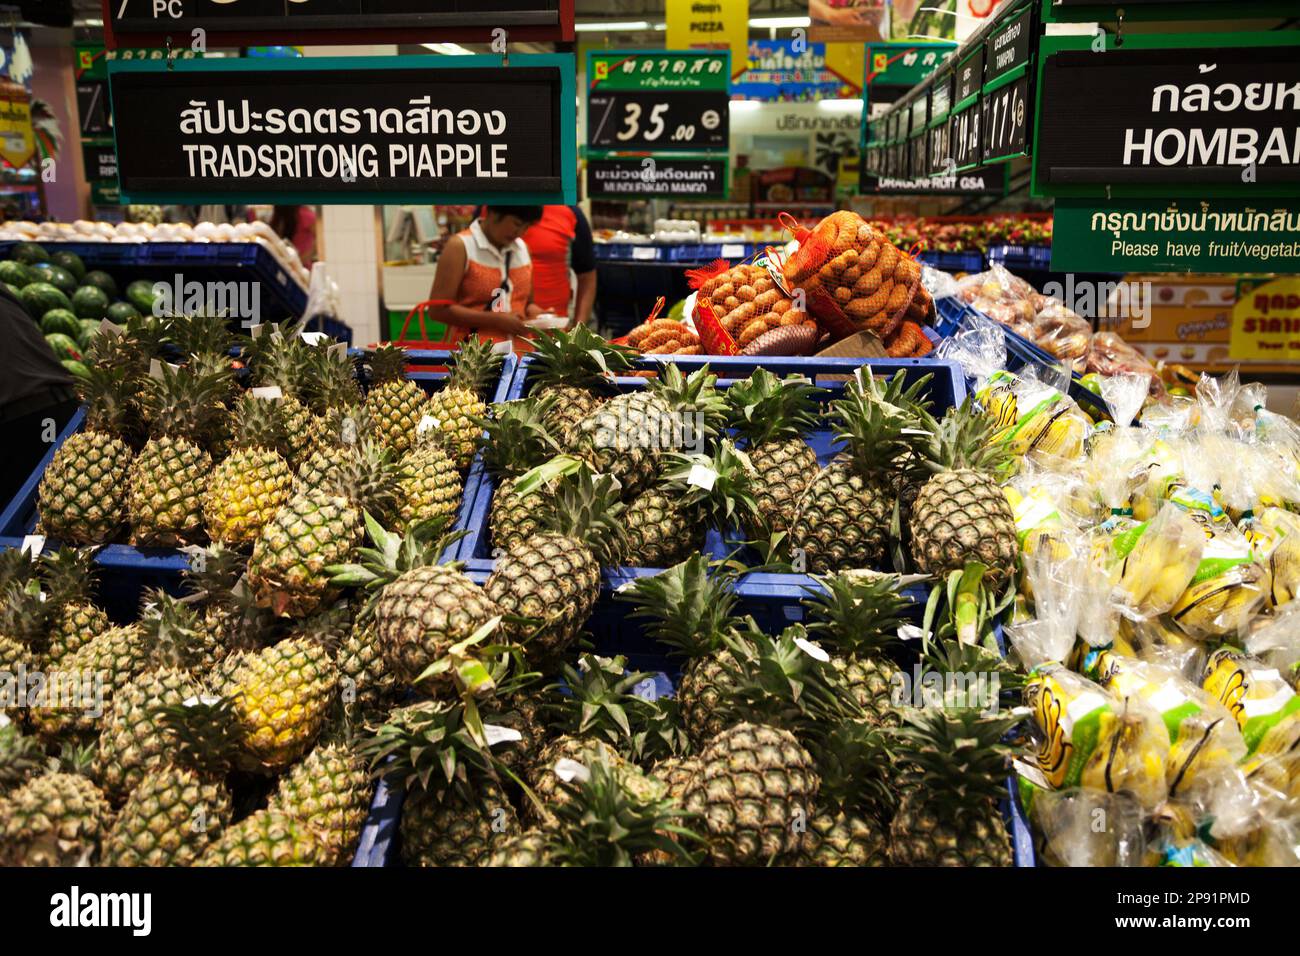 Pattaya, Tailandia - 23 de marzo de 2016: Estante de supermercado asiático: Pila de piñas, plátanos y otras frutas. Señal del mercado tailandés e inglés: Ortografía incorrecta Foto de stock